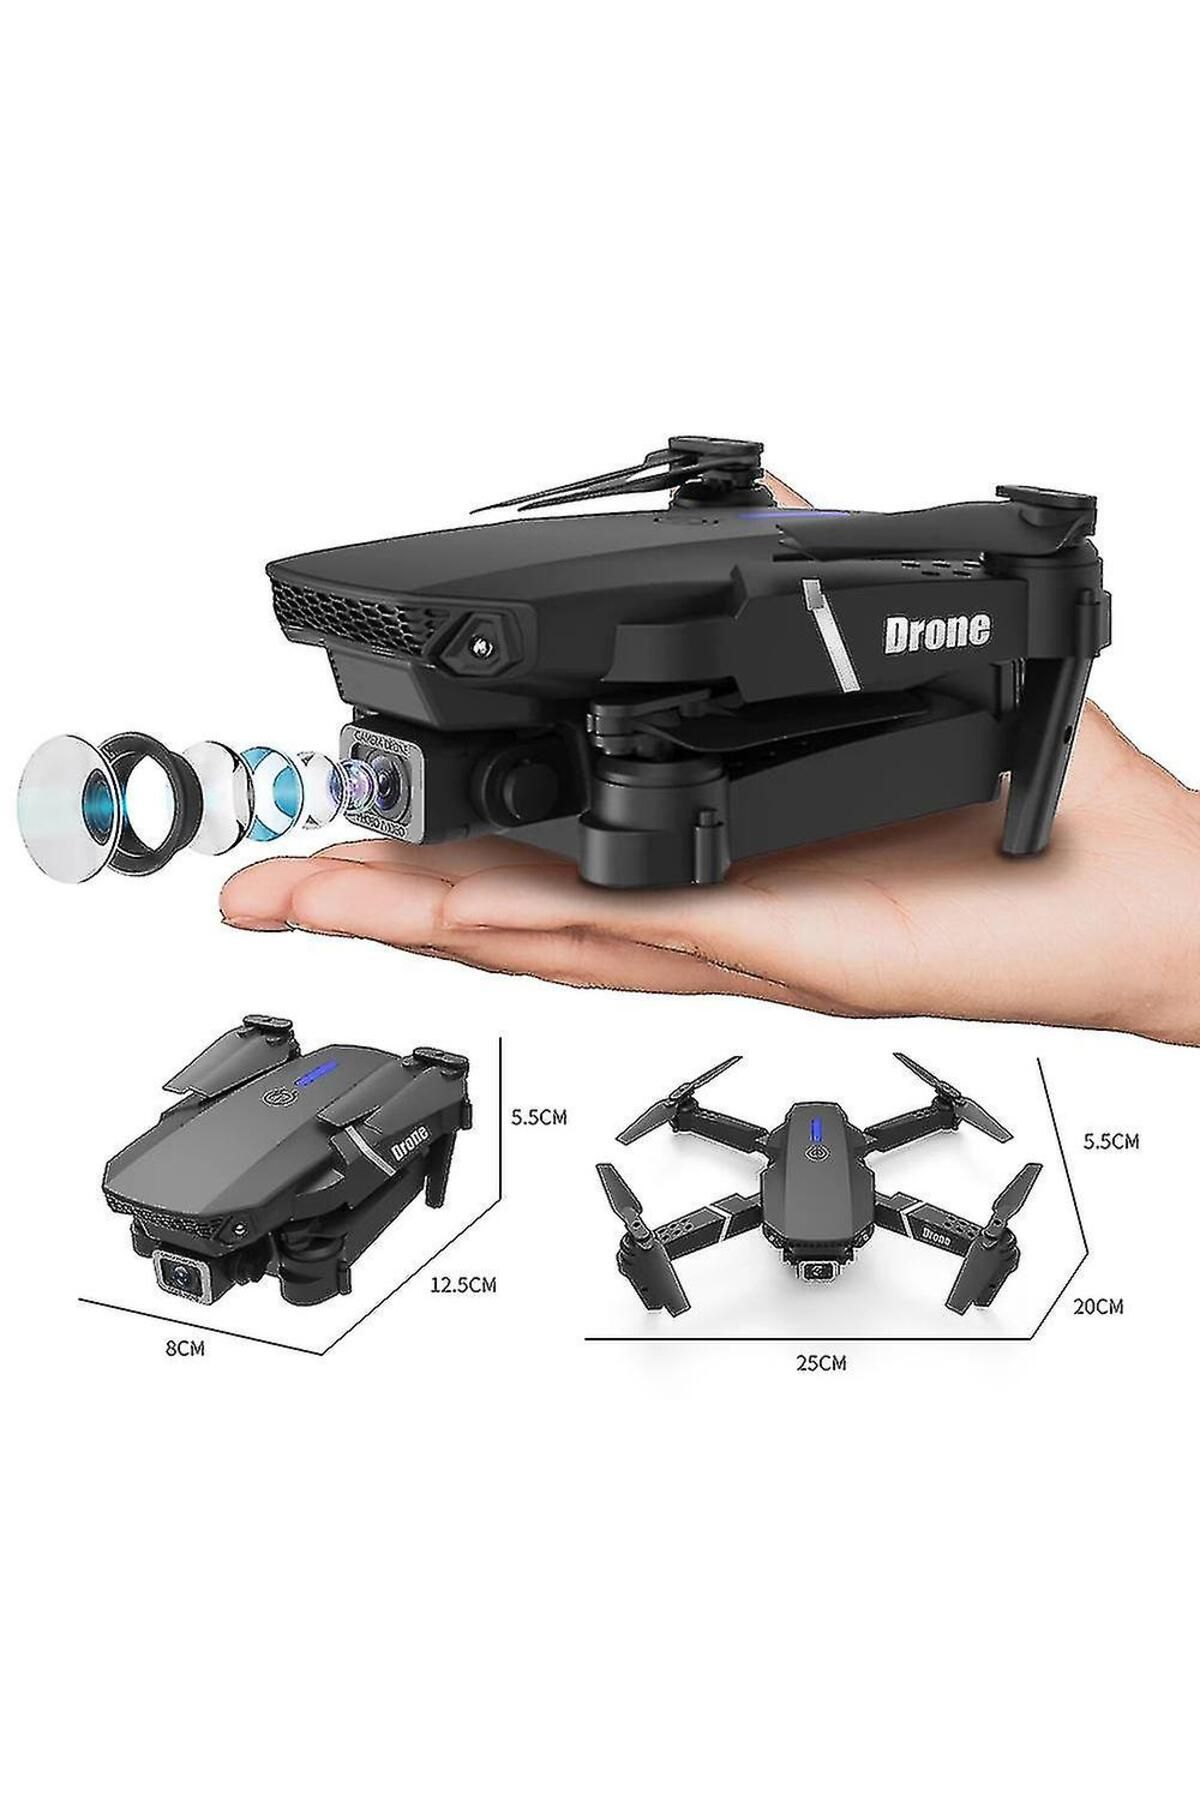 JUNGLEE Hd Çift Kameralı Wifi Profesyonel Drone Led Işıklı Katlanabilir Drone Şarjlı Uzaktan Kumandalı